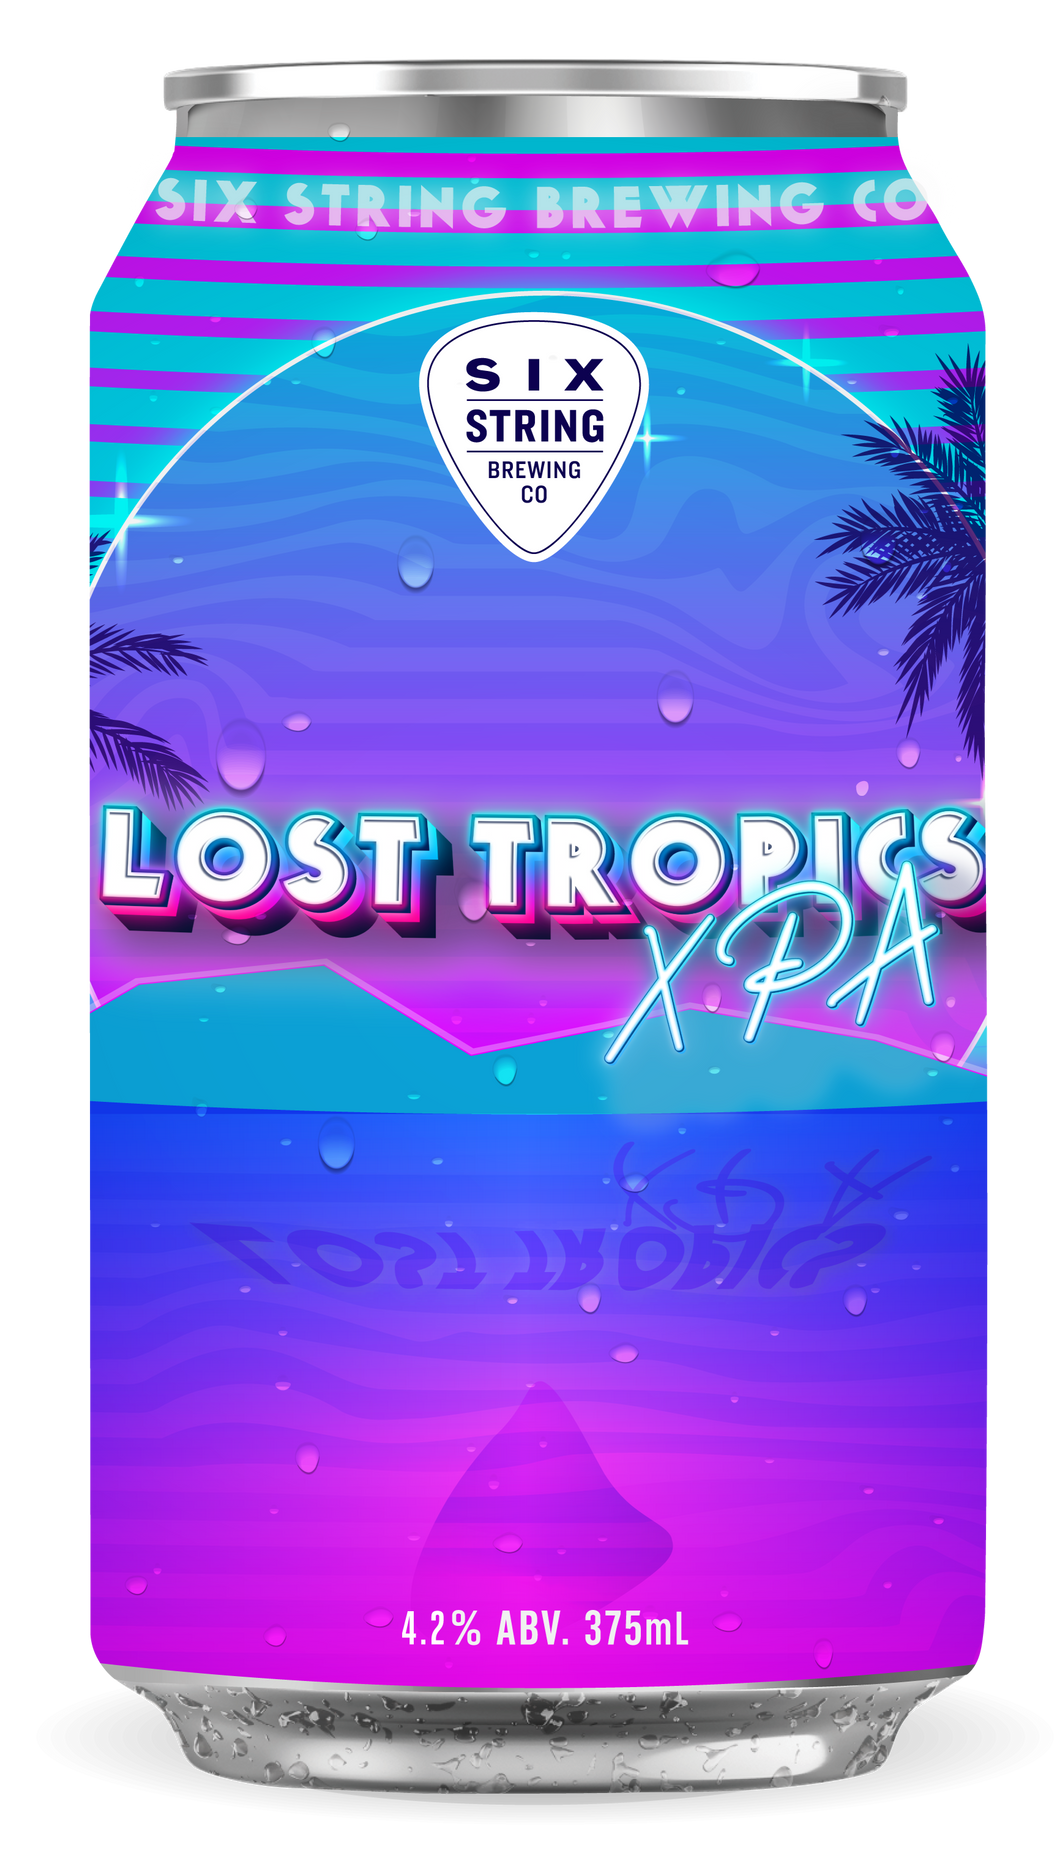 Lost Tropics XPA